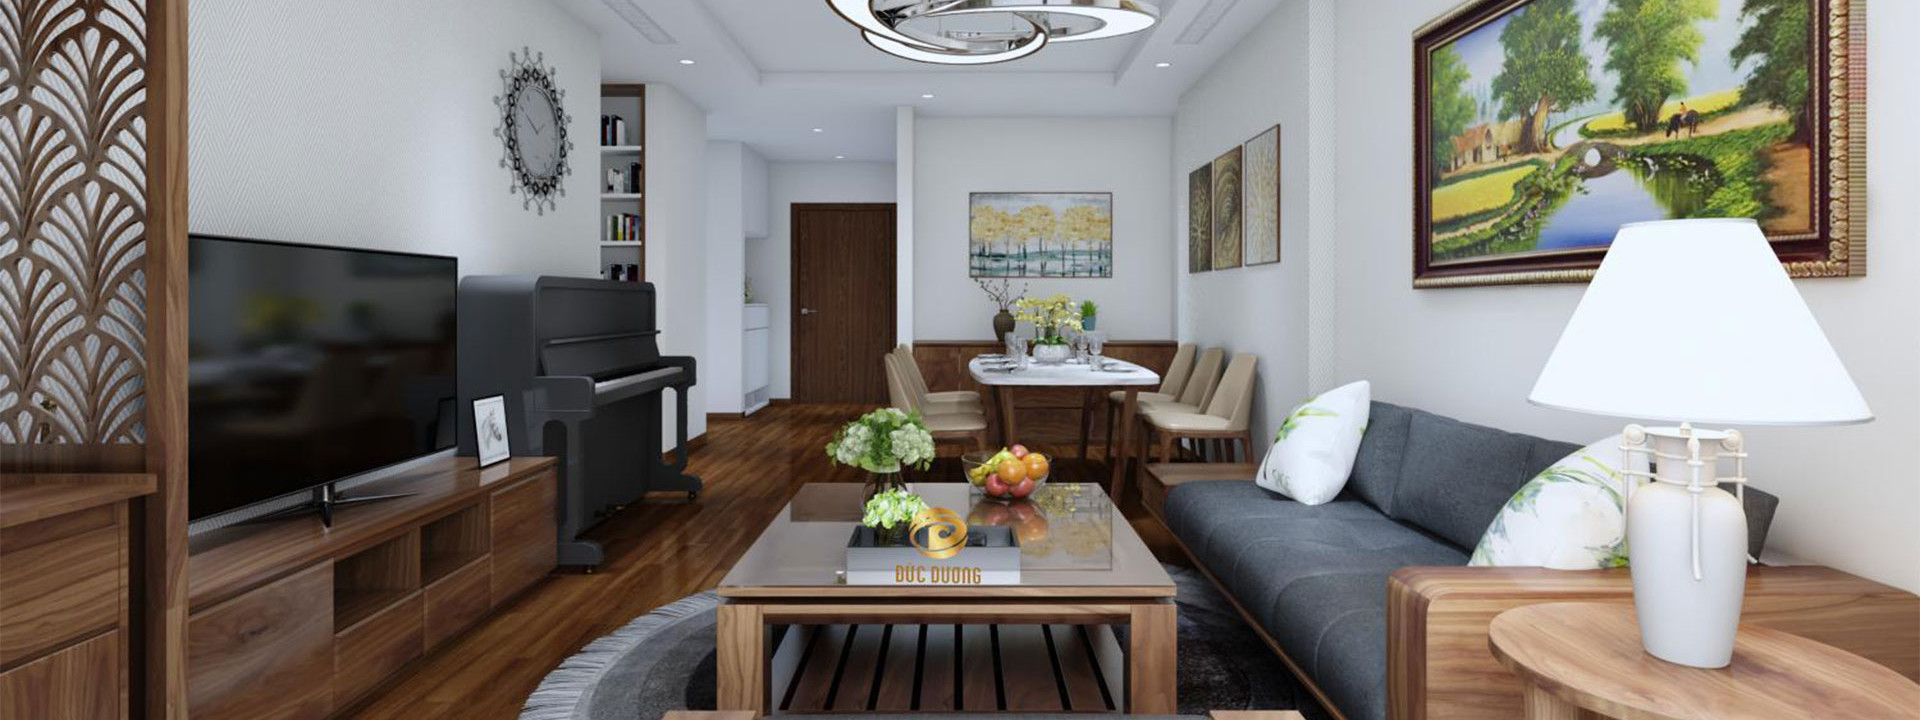 Thiết kế nội thất phòng khách hiện đại – sự lựa chọn tối ưu cho ngôi nhà của bạn